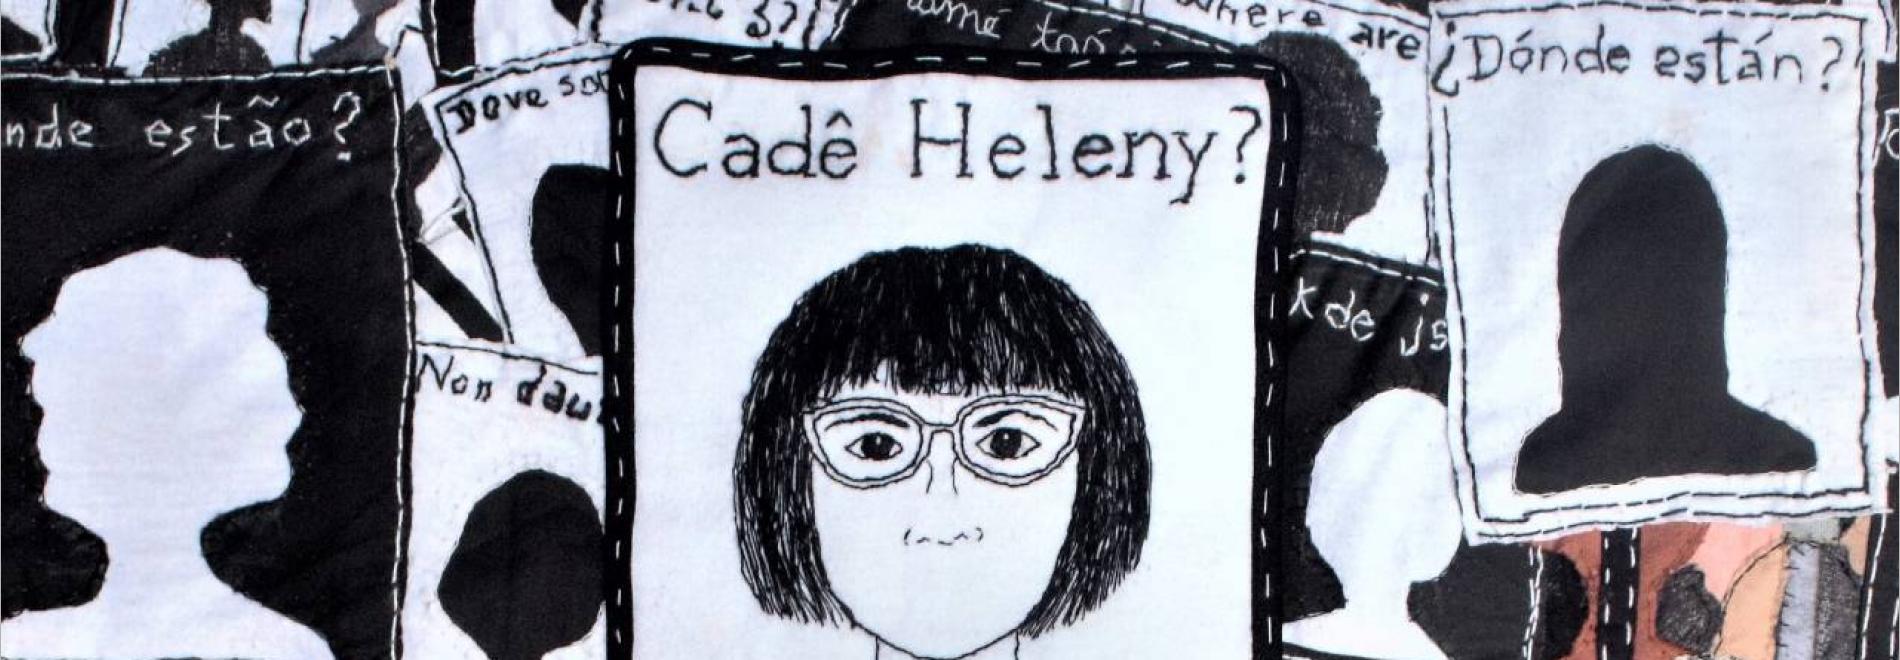 Cade Heleny